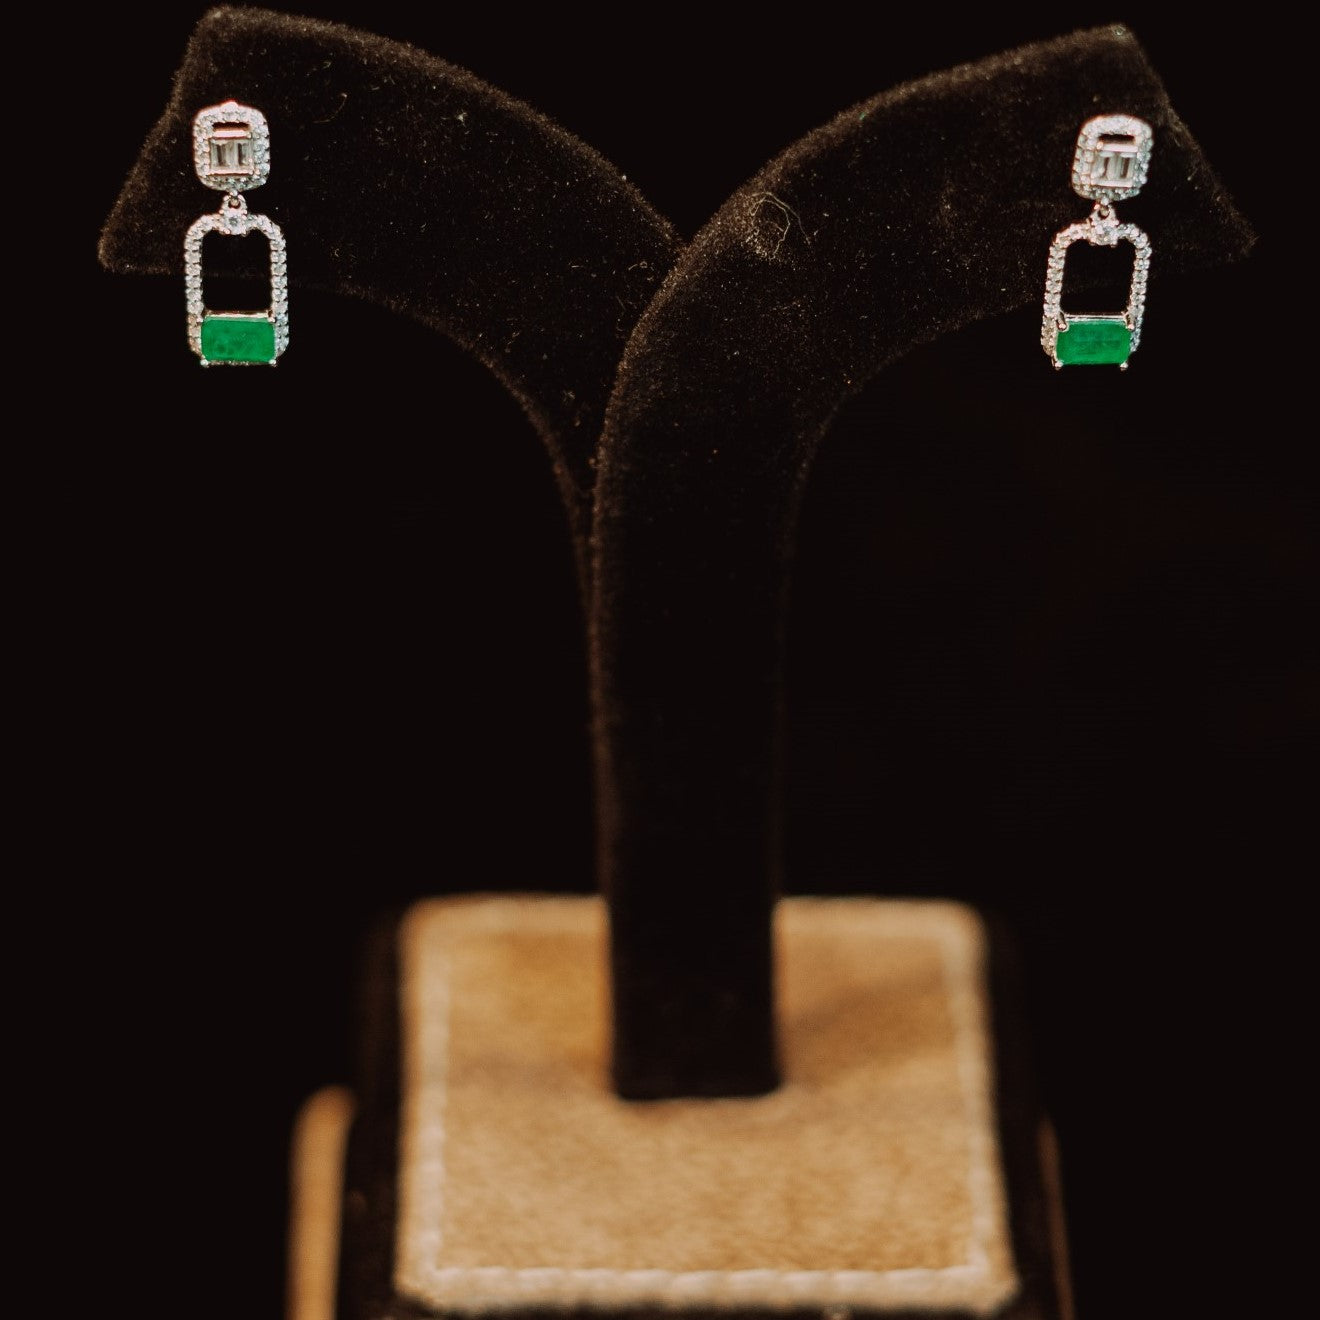 Vintage style crystal drop earrings